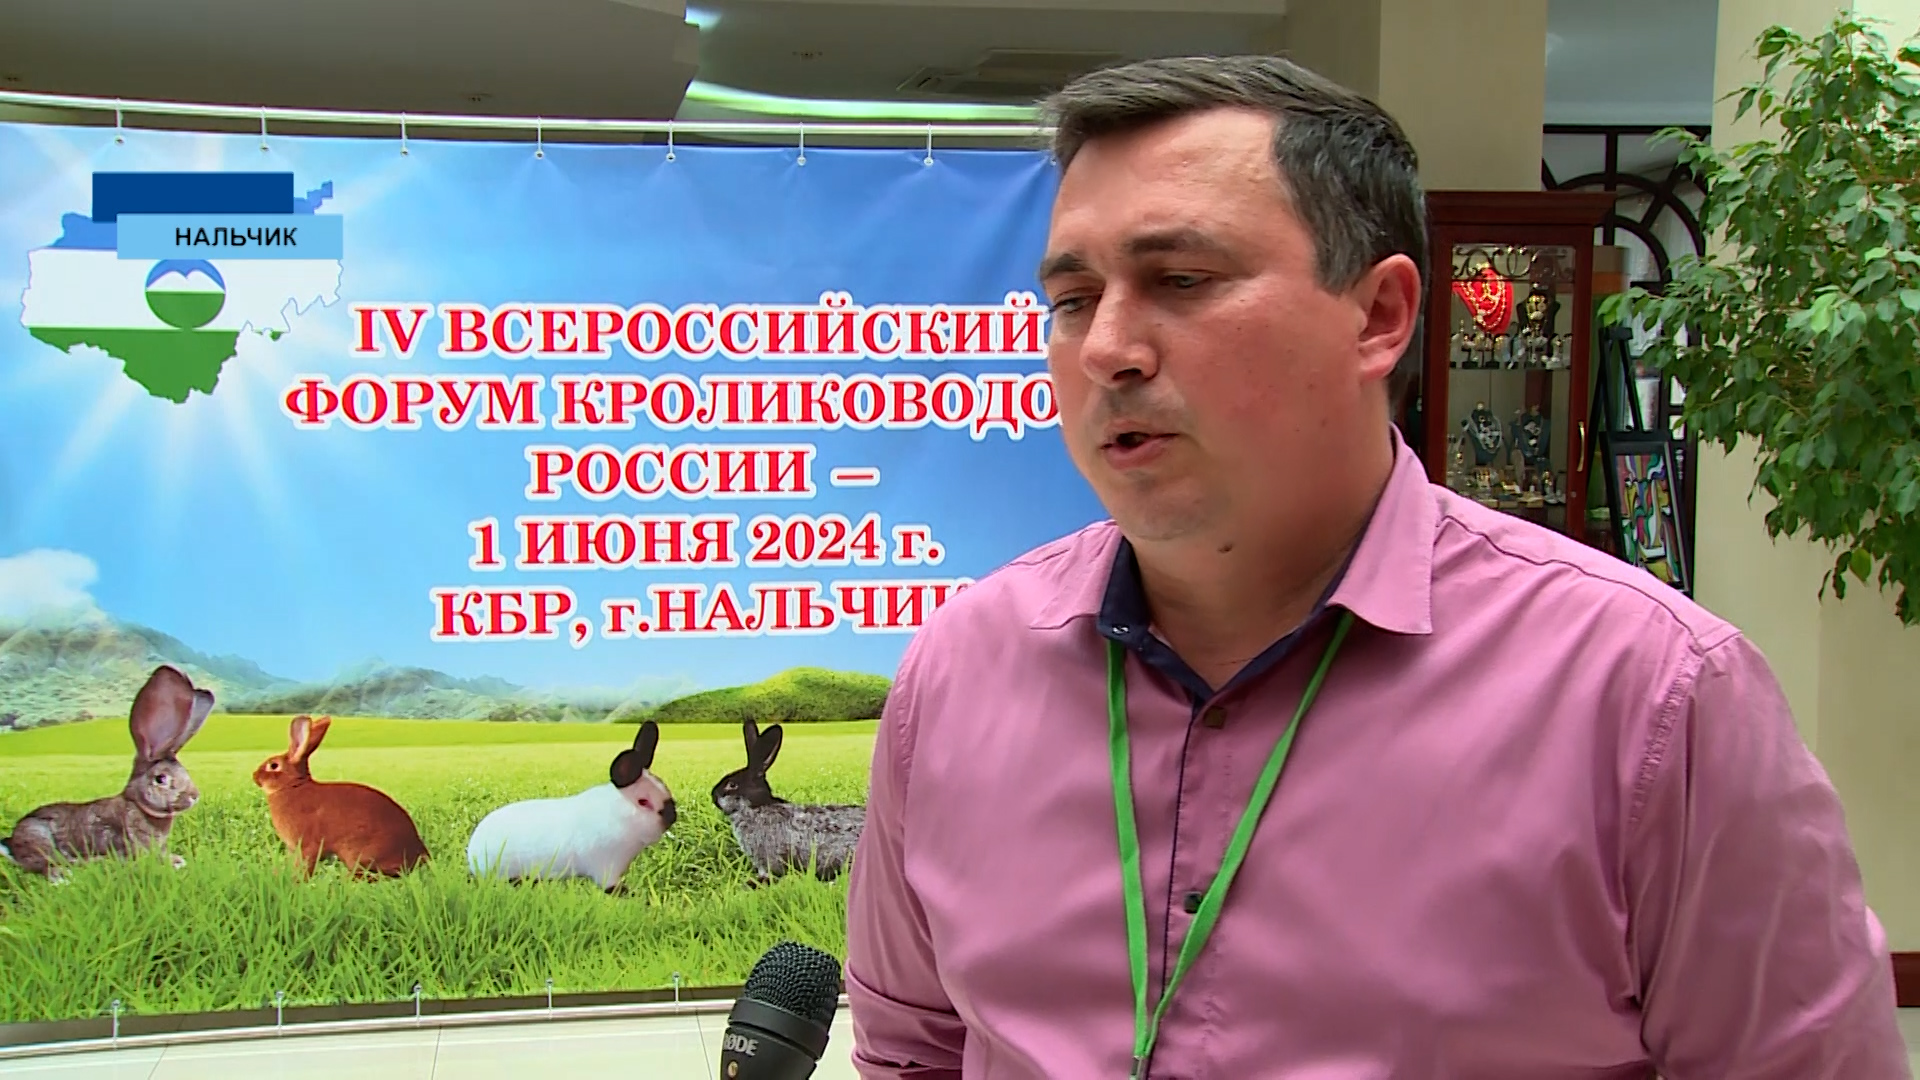 В Нальчике прошел IV Всероссийский форум кролиководов России